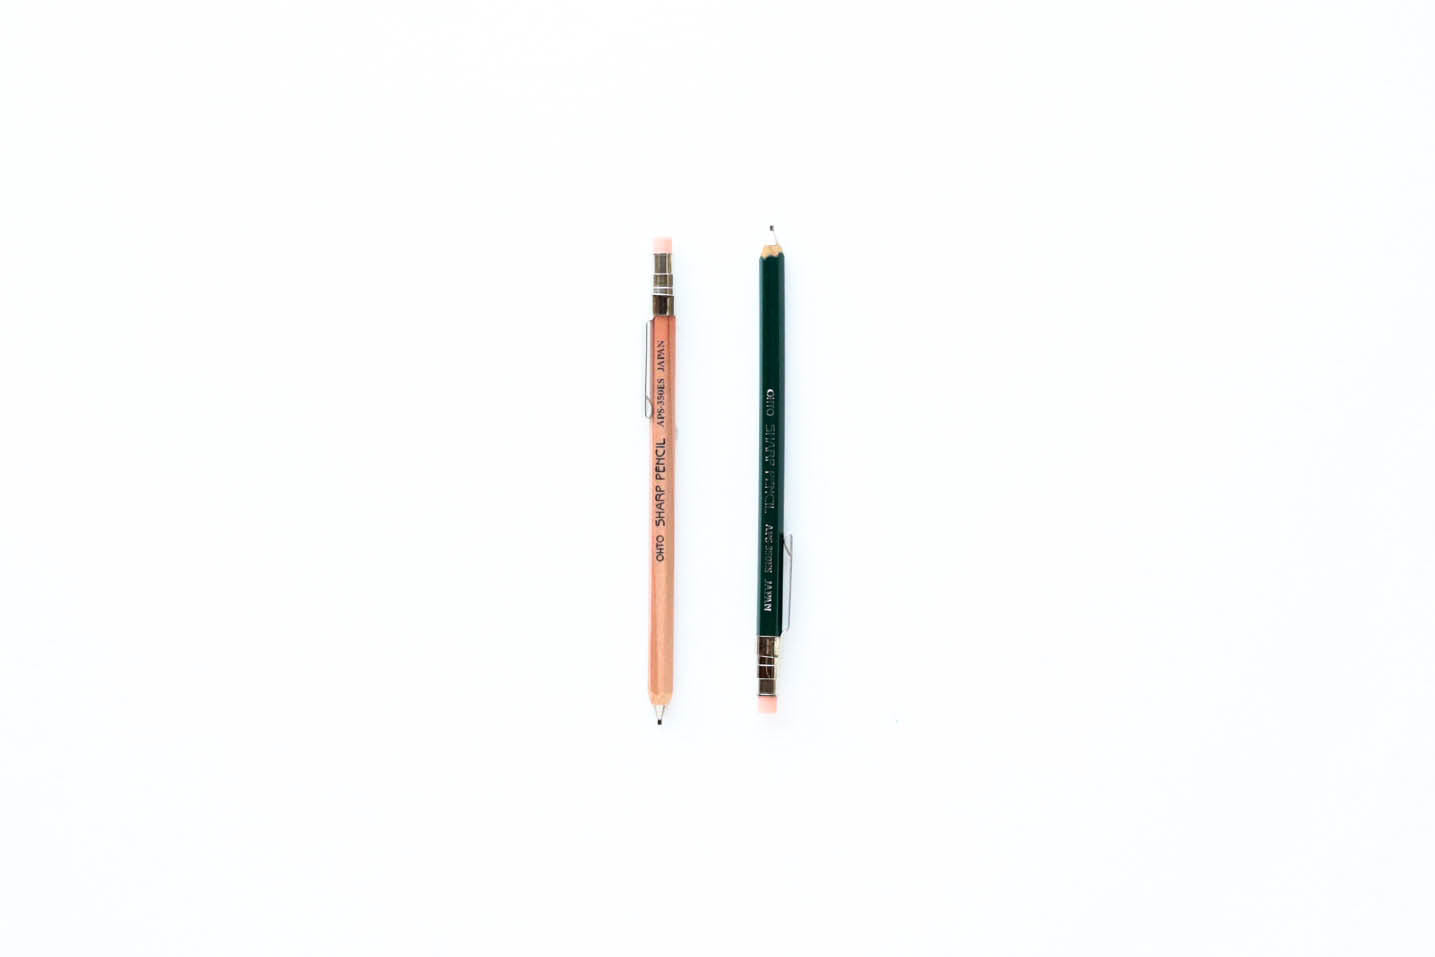 Pencils / Graphite, Lead, Colored